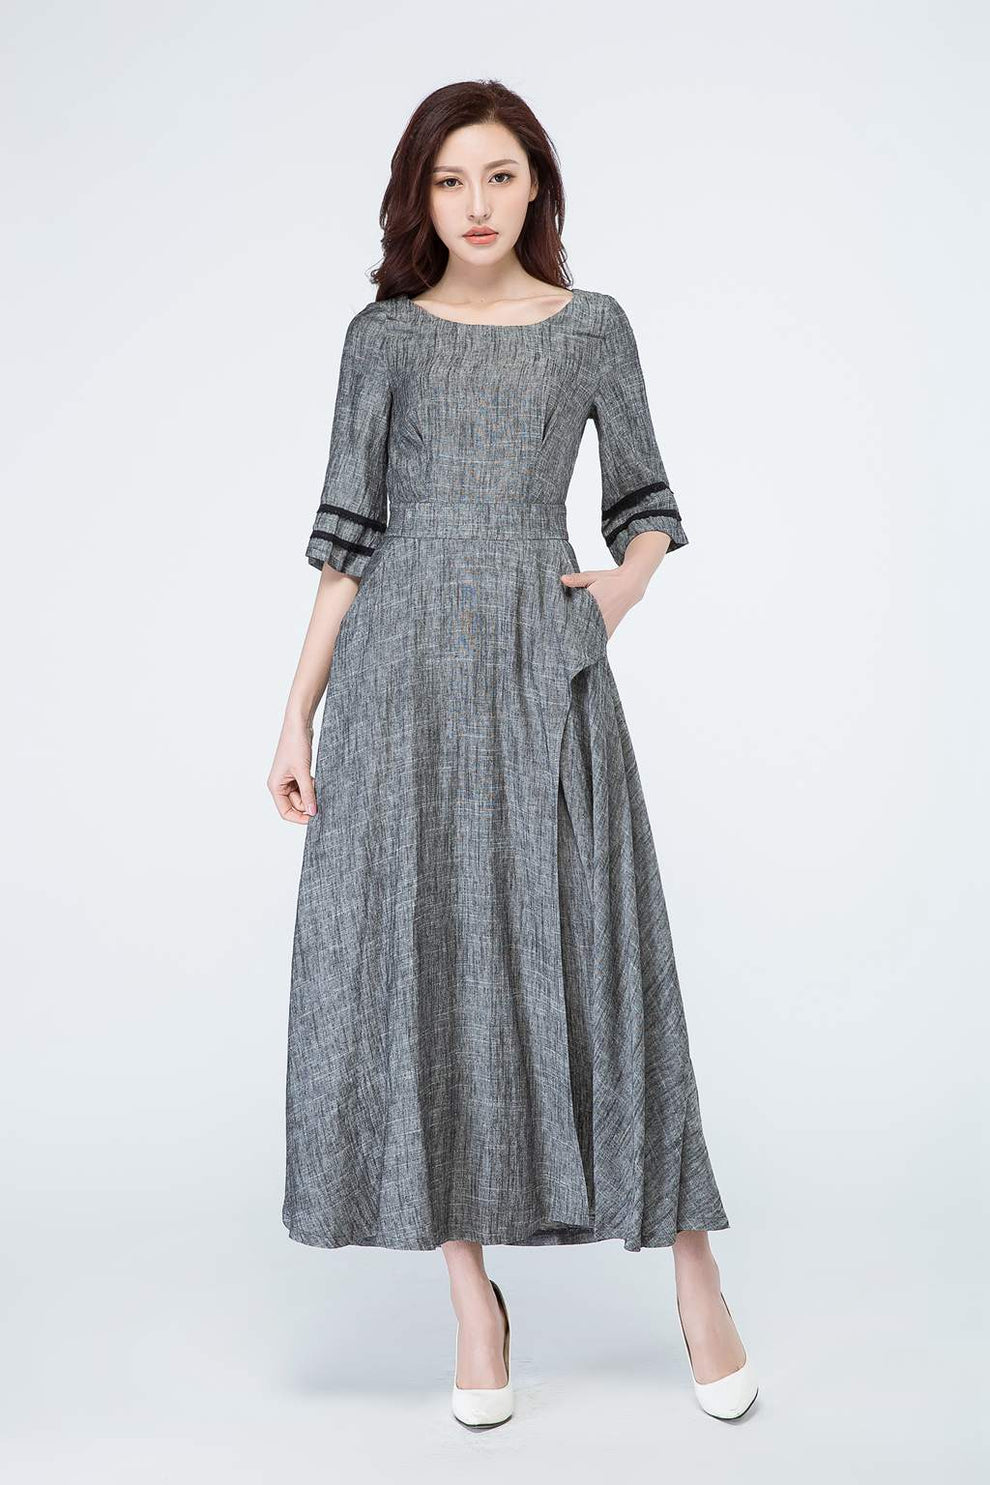 Grey dress, linen dress, maxi dress 1698 – XiaoLizi